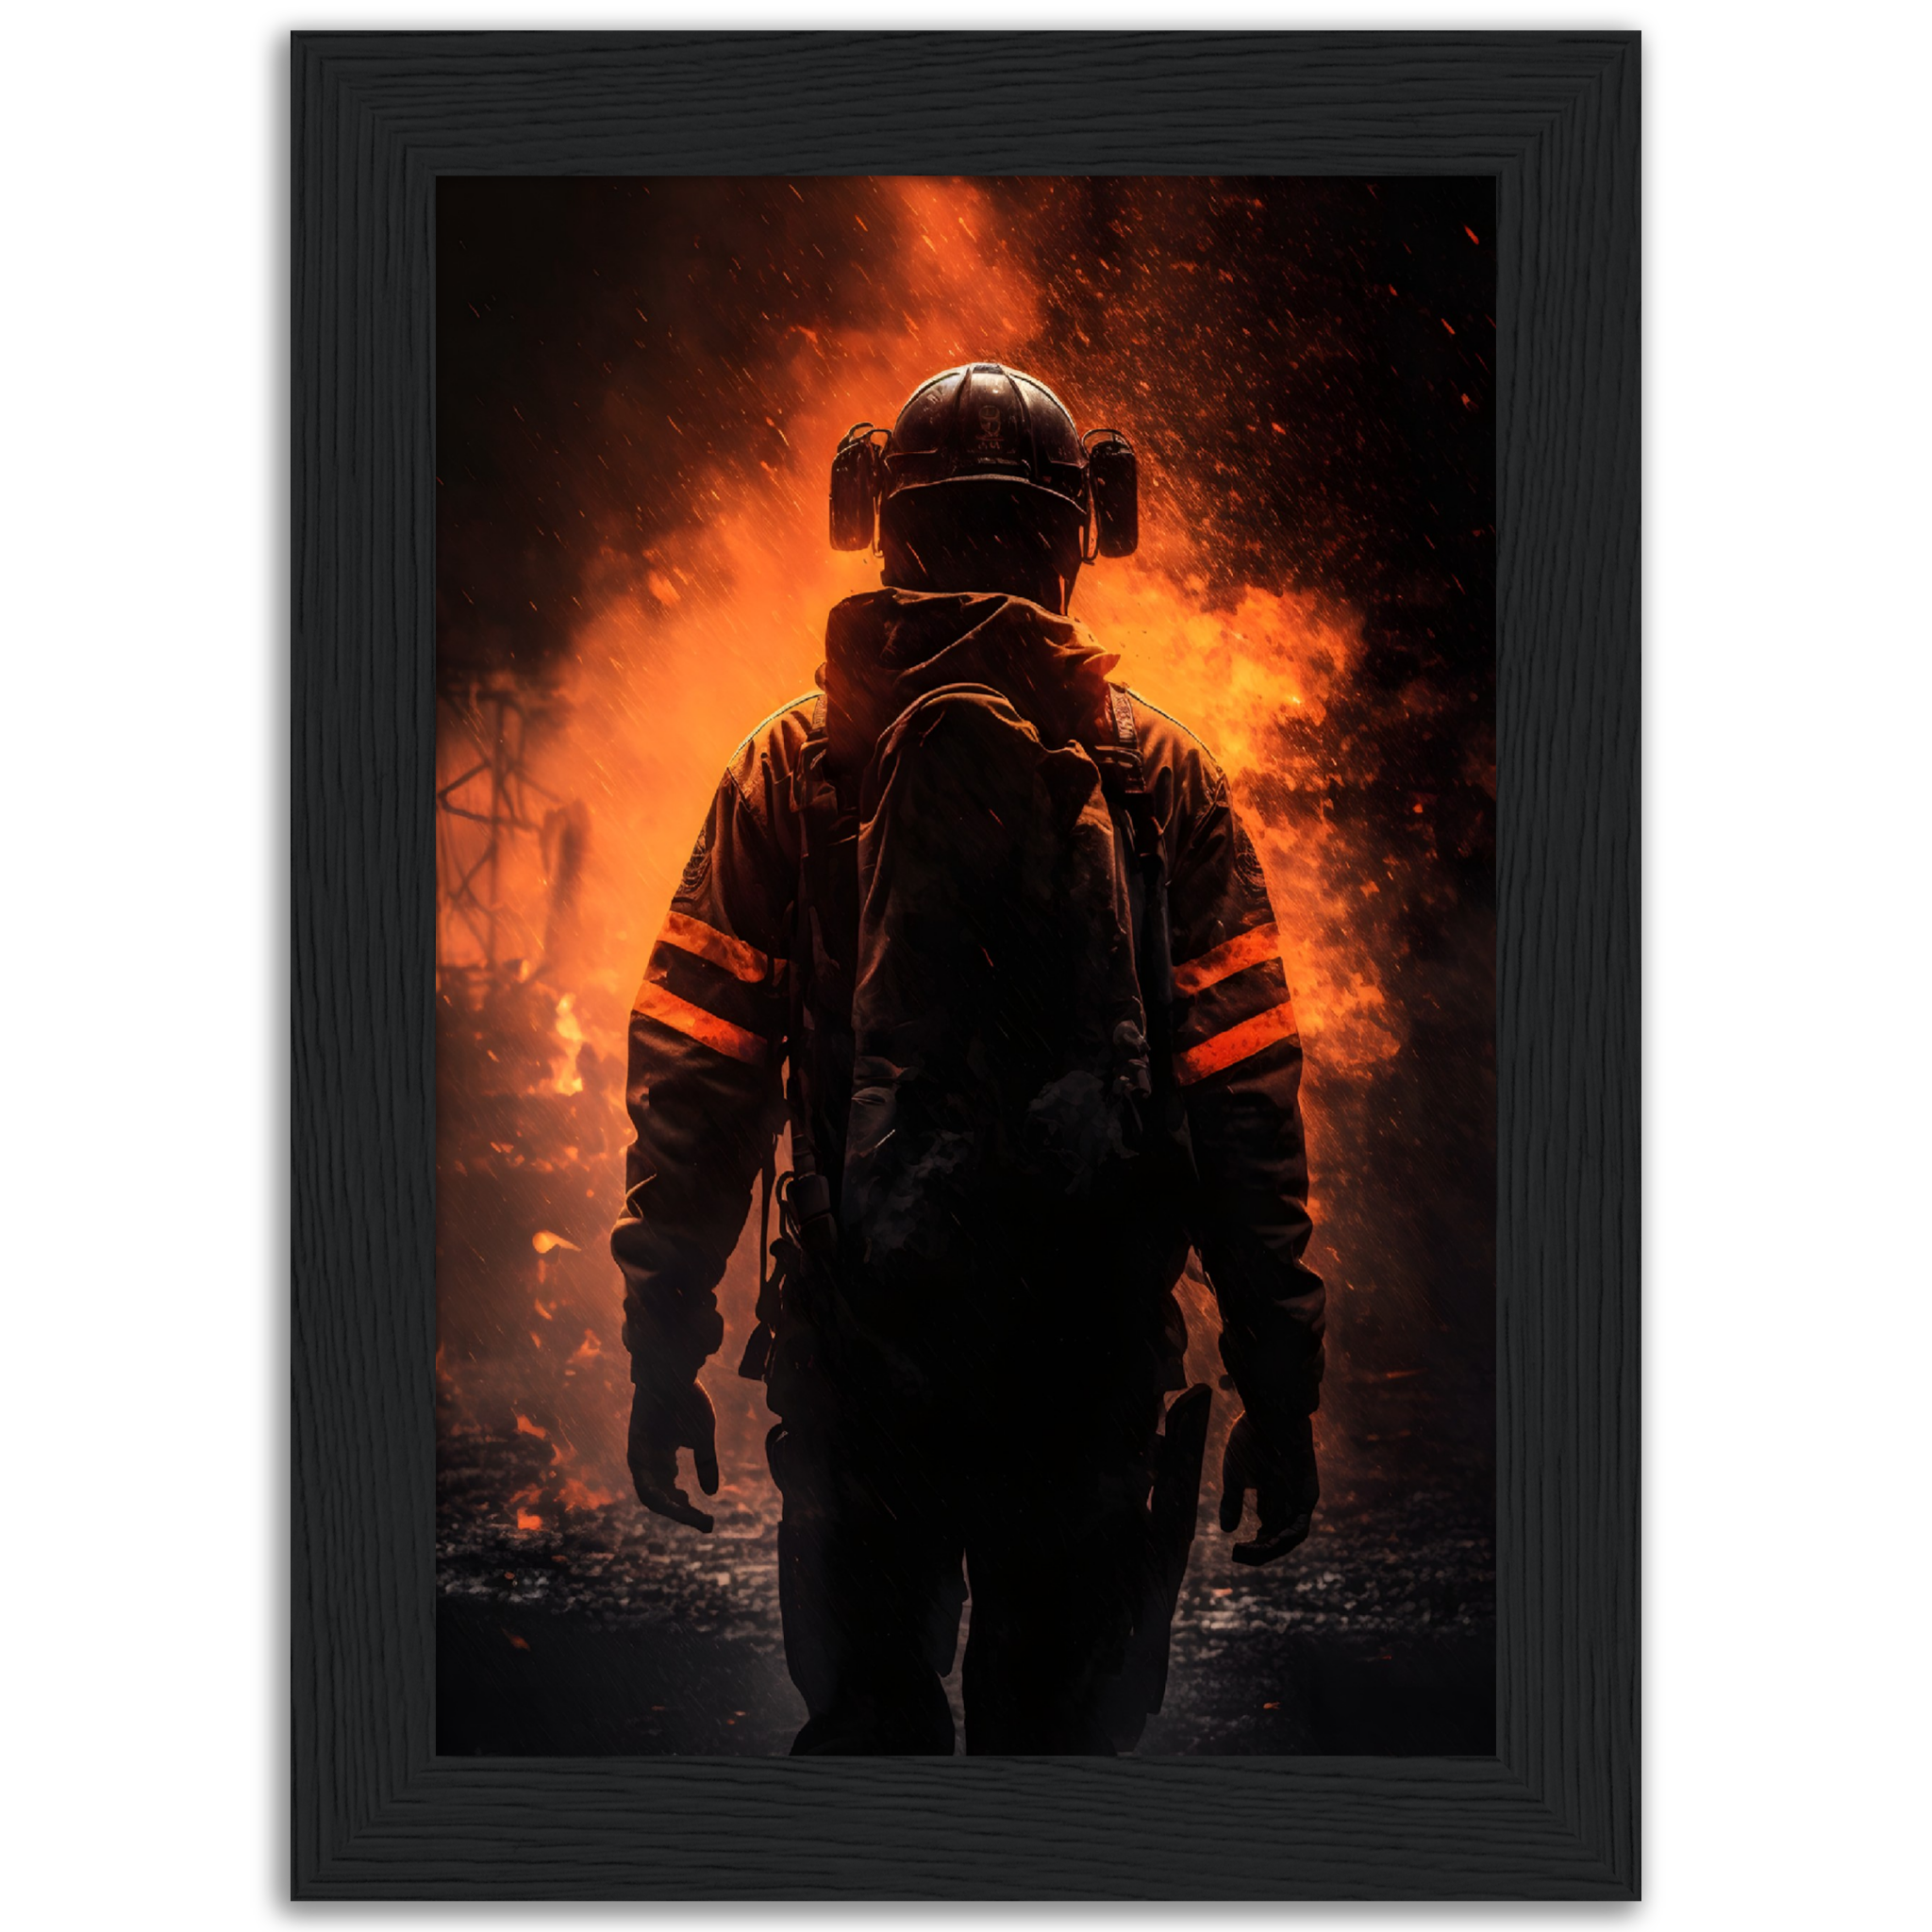 Poster premium en papier mat encadré en bois "Firefighter in the flames"